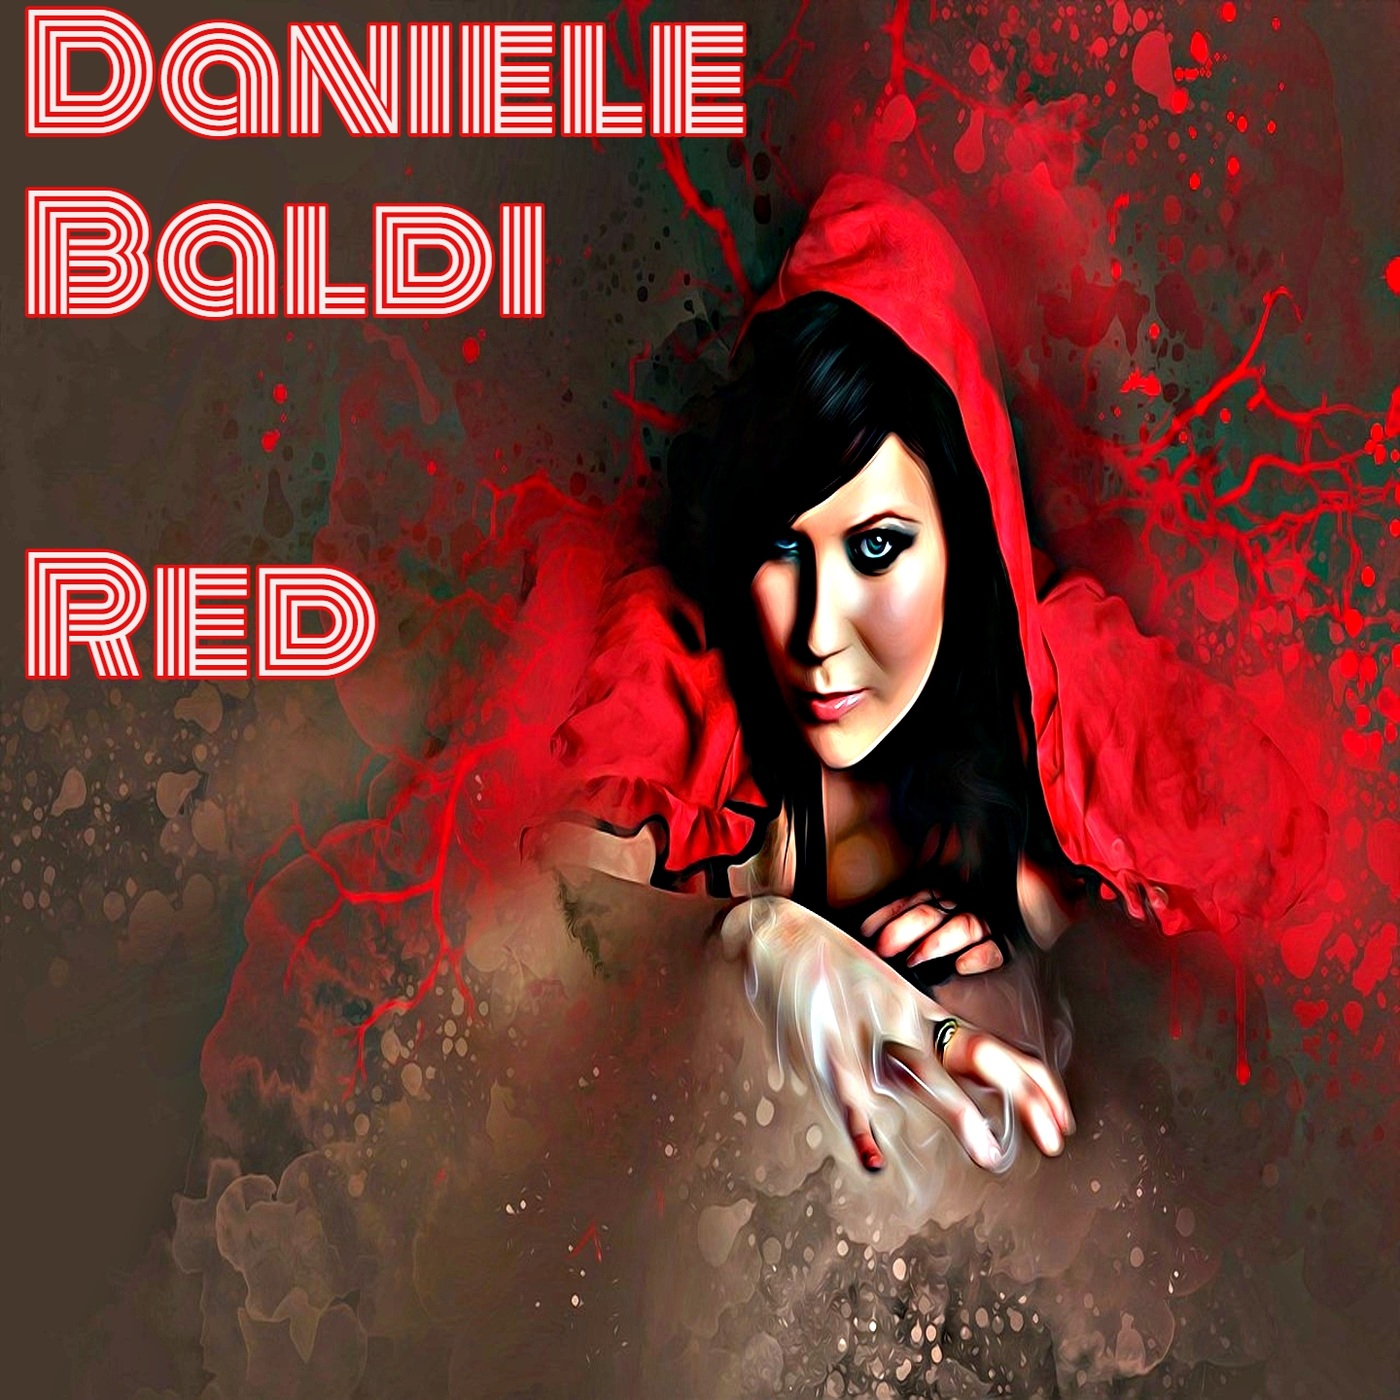 Daniele Baldi - Red / Monie Power Records